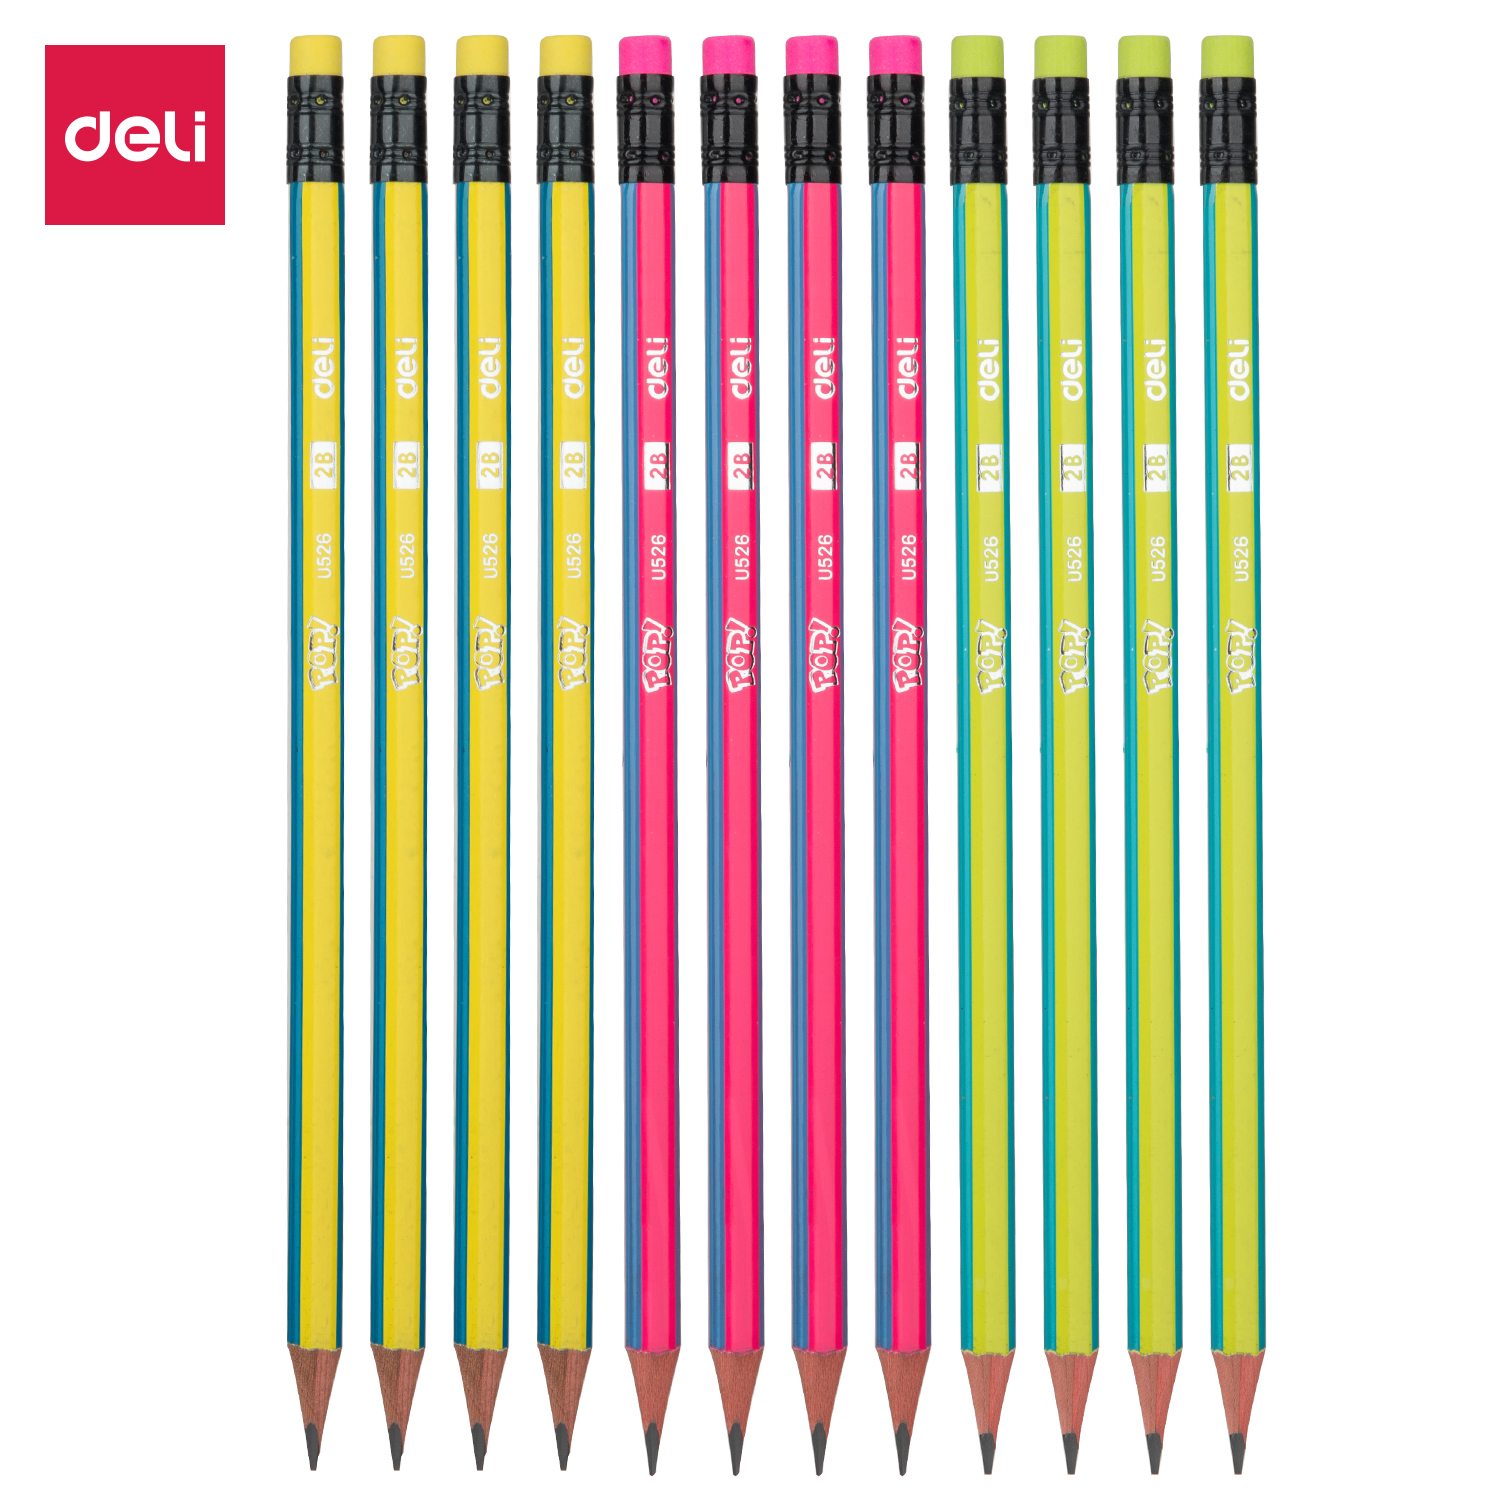 Deli-EU52600 Graphite Pencil